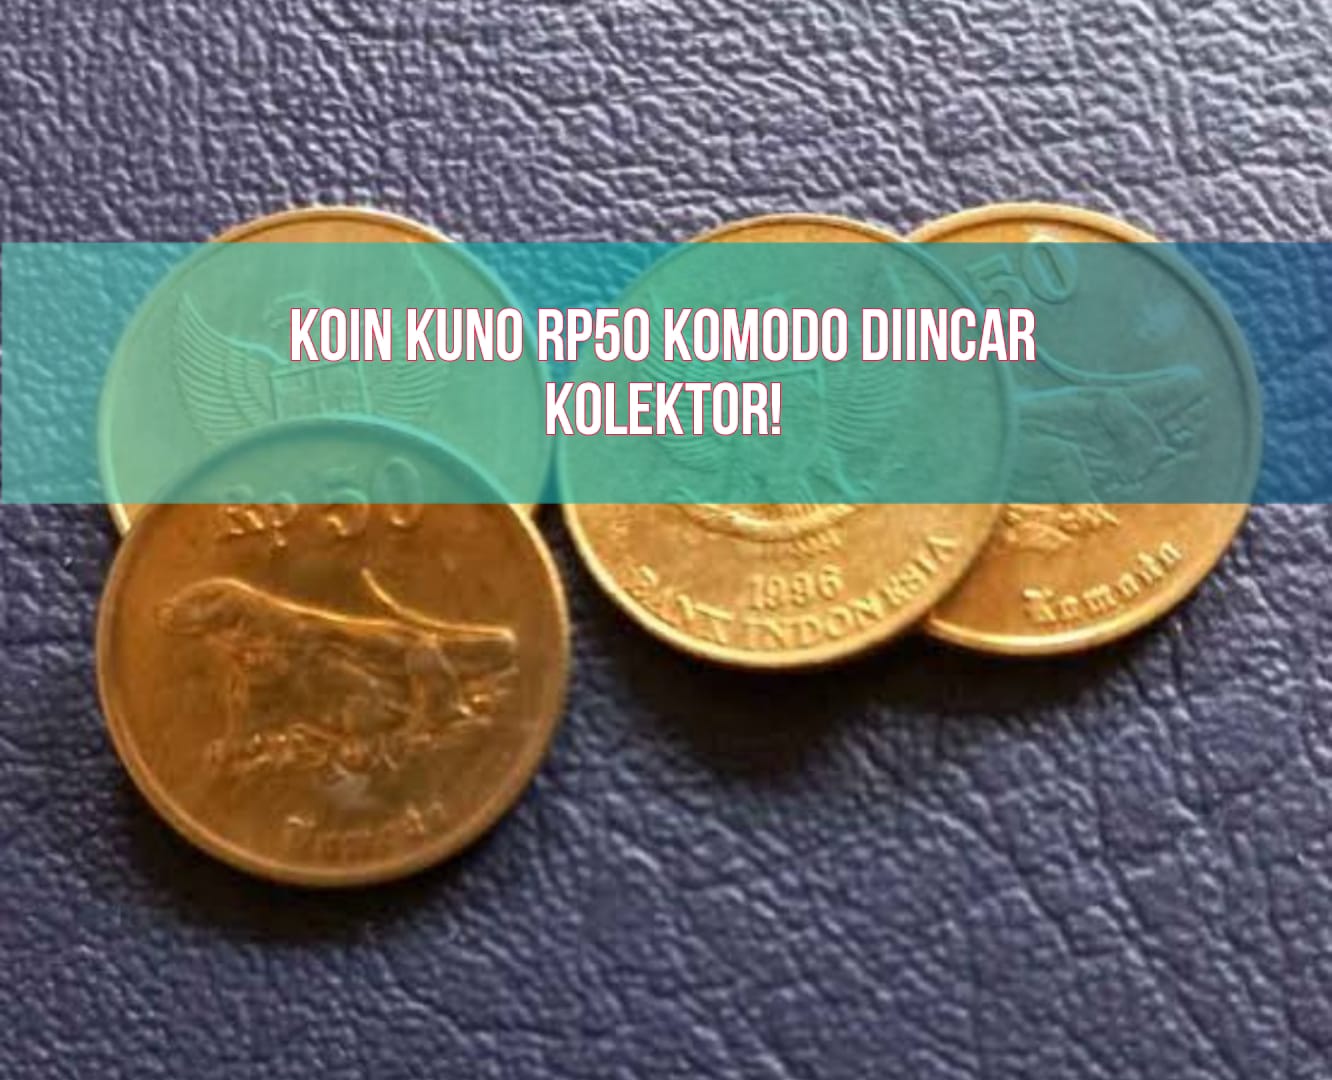 Kolektor Incar Koin Kuno Rp50 Gambar Komodo, Ditawar Rp2.500.000 per Keping, Begini Ciri-cirinya!